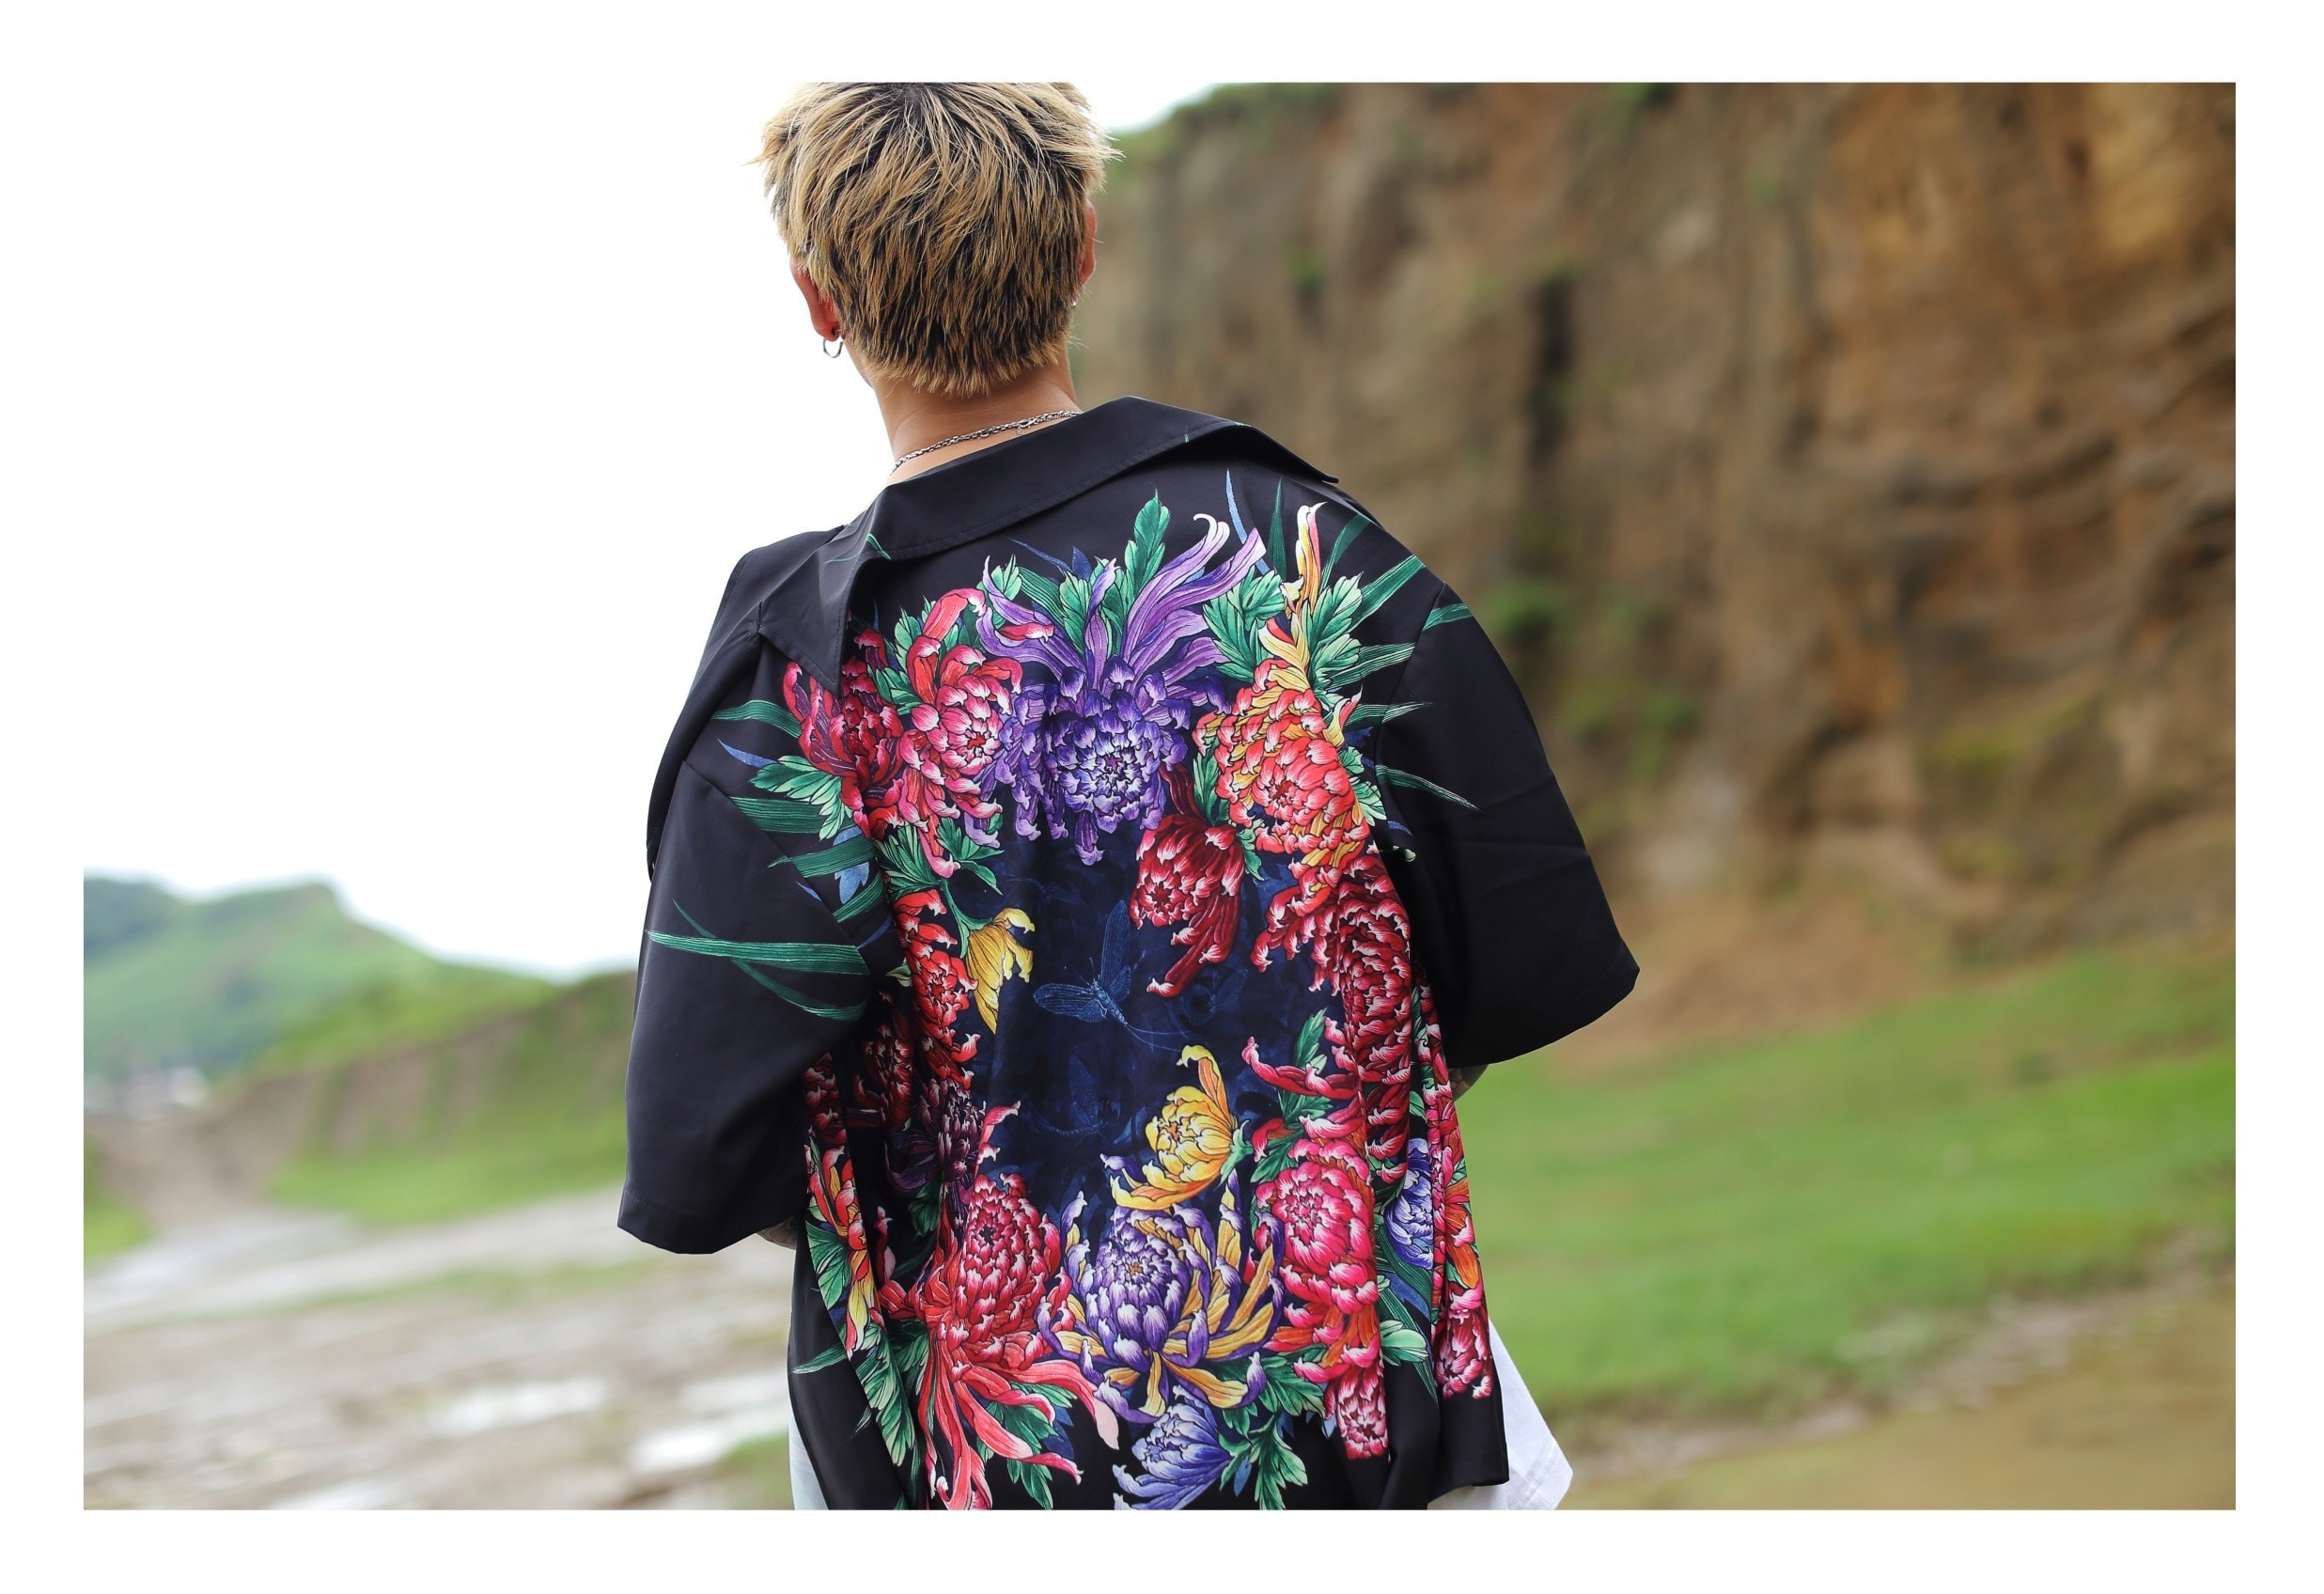 台灣刺青藝術家 ZAGAKENNY 推出「菊與蜉蝣」古巴襯衫